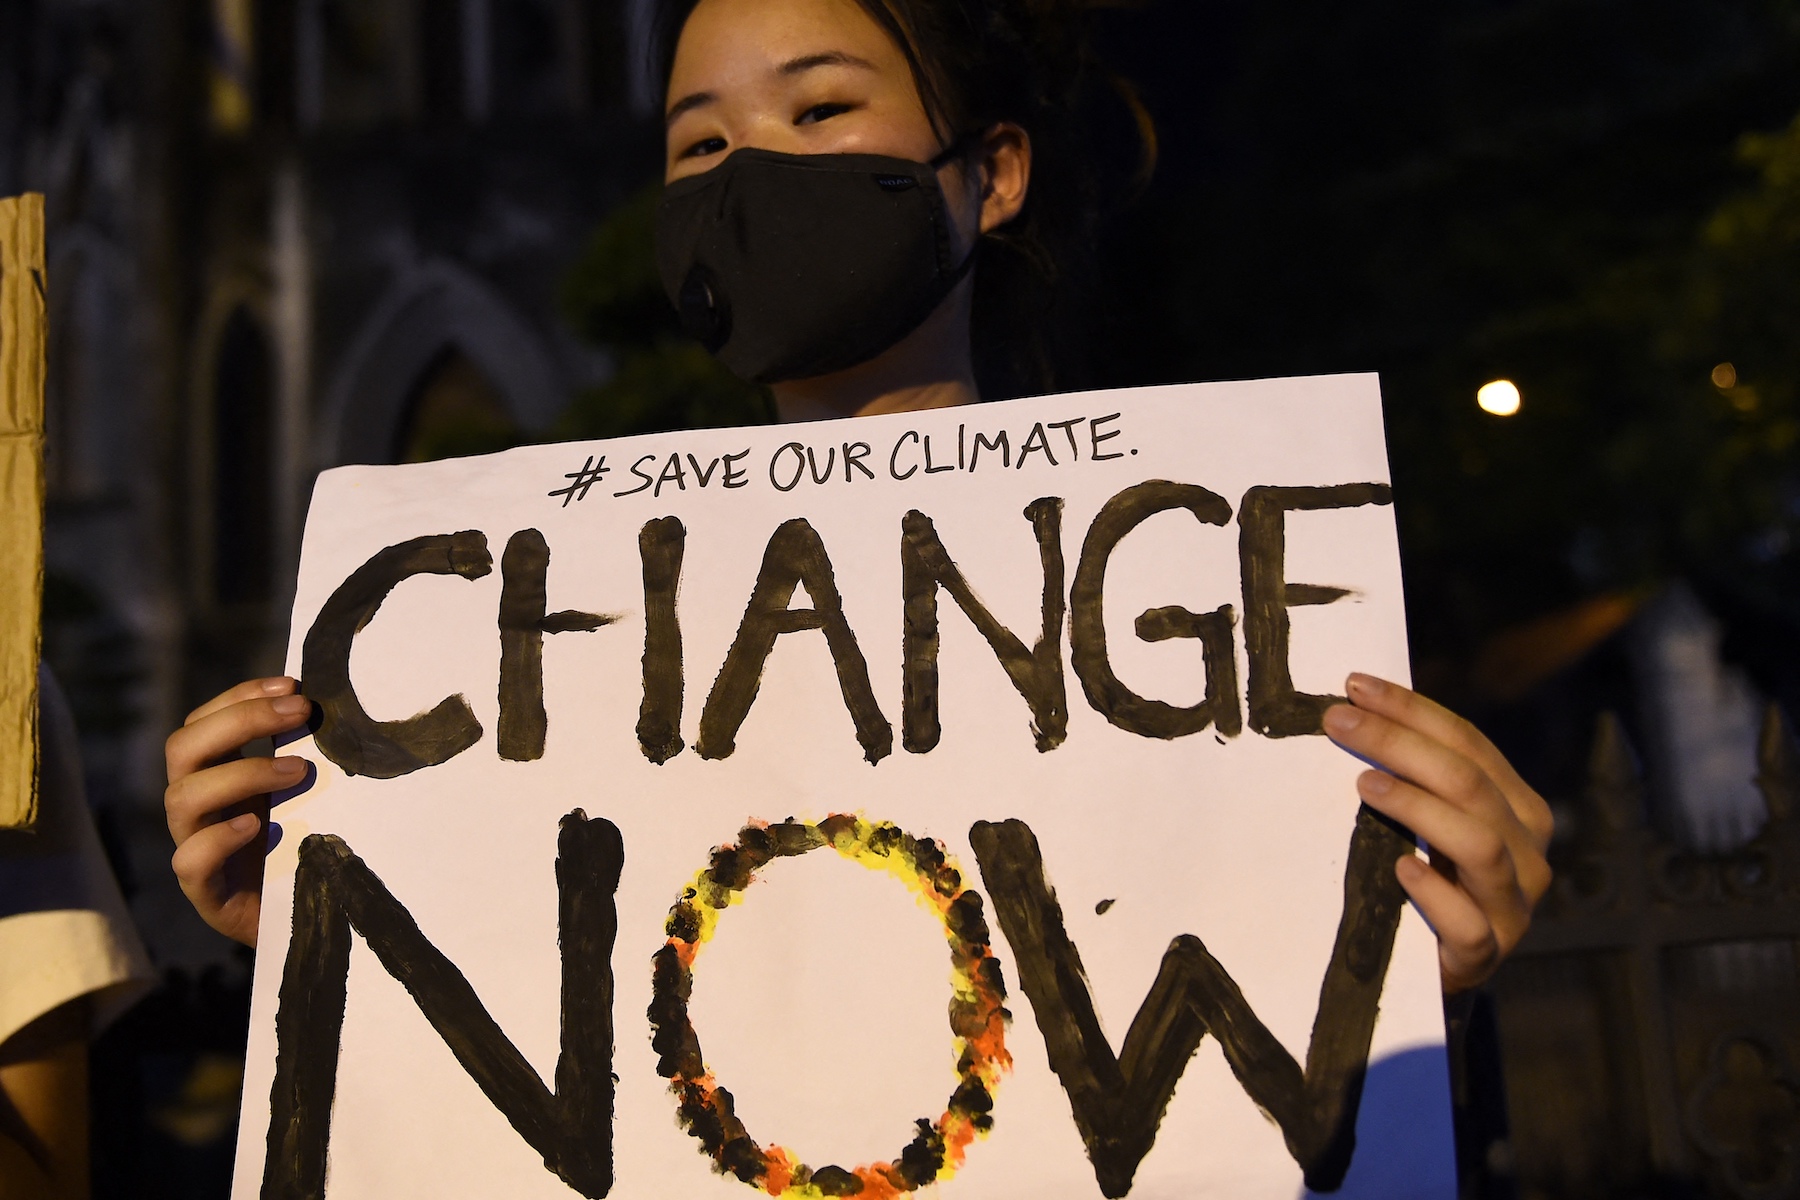 Hoang Thi Minh Hong save the climate sign